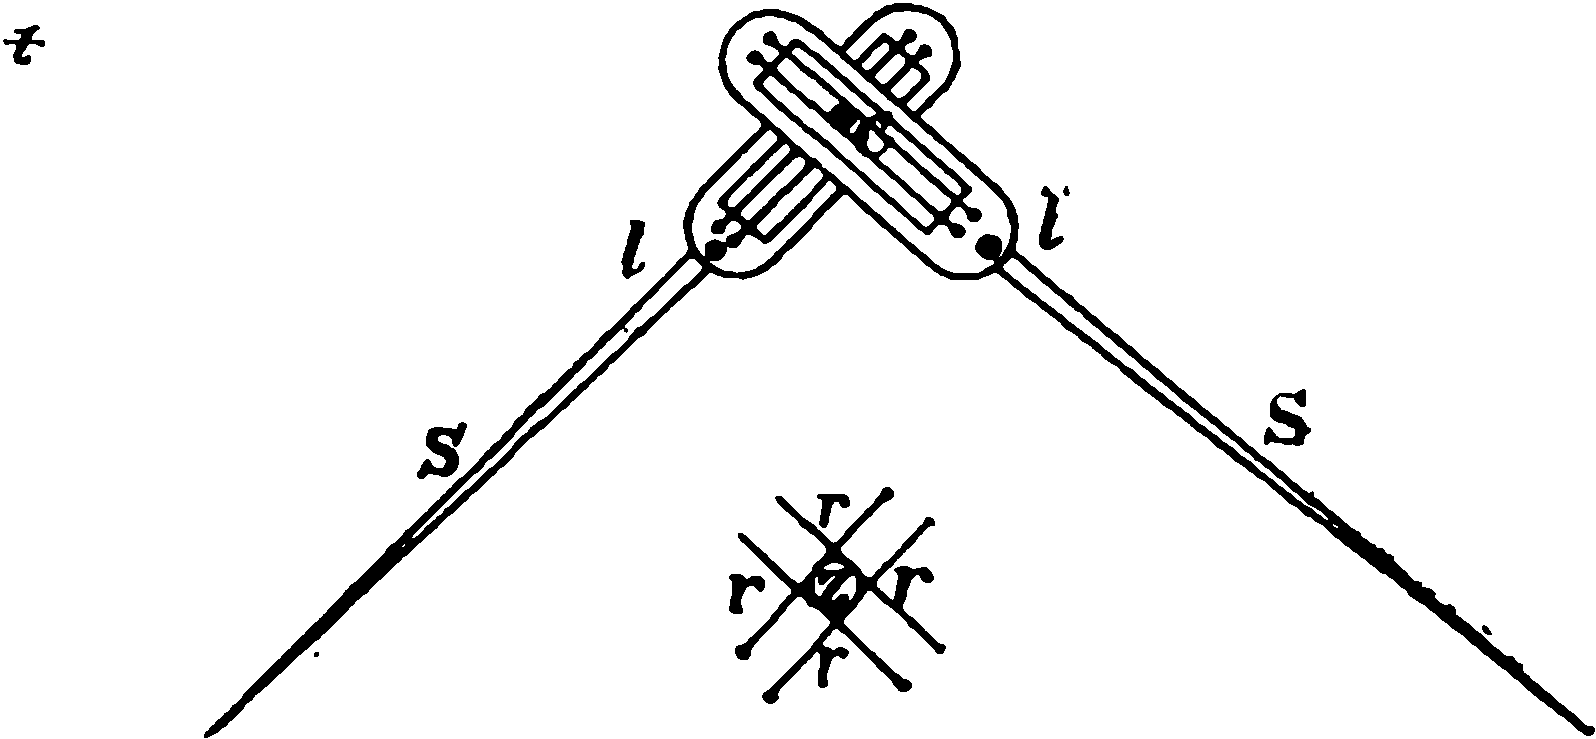 Рис. 17. Большой маятник (отвес) для определения колебаний положения центра тяжести Земли. Справа показано устройство стрелок SS. Они могут поворачиваться вокруг осей ll. Конец стержня С помещен между двумя парами натянутых нитей rr